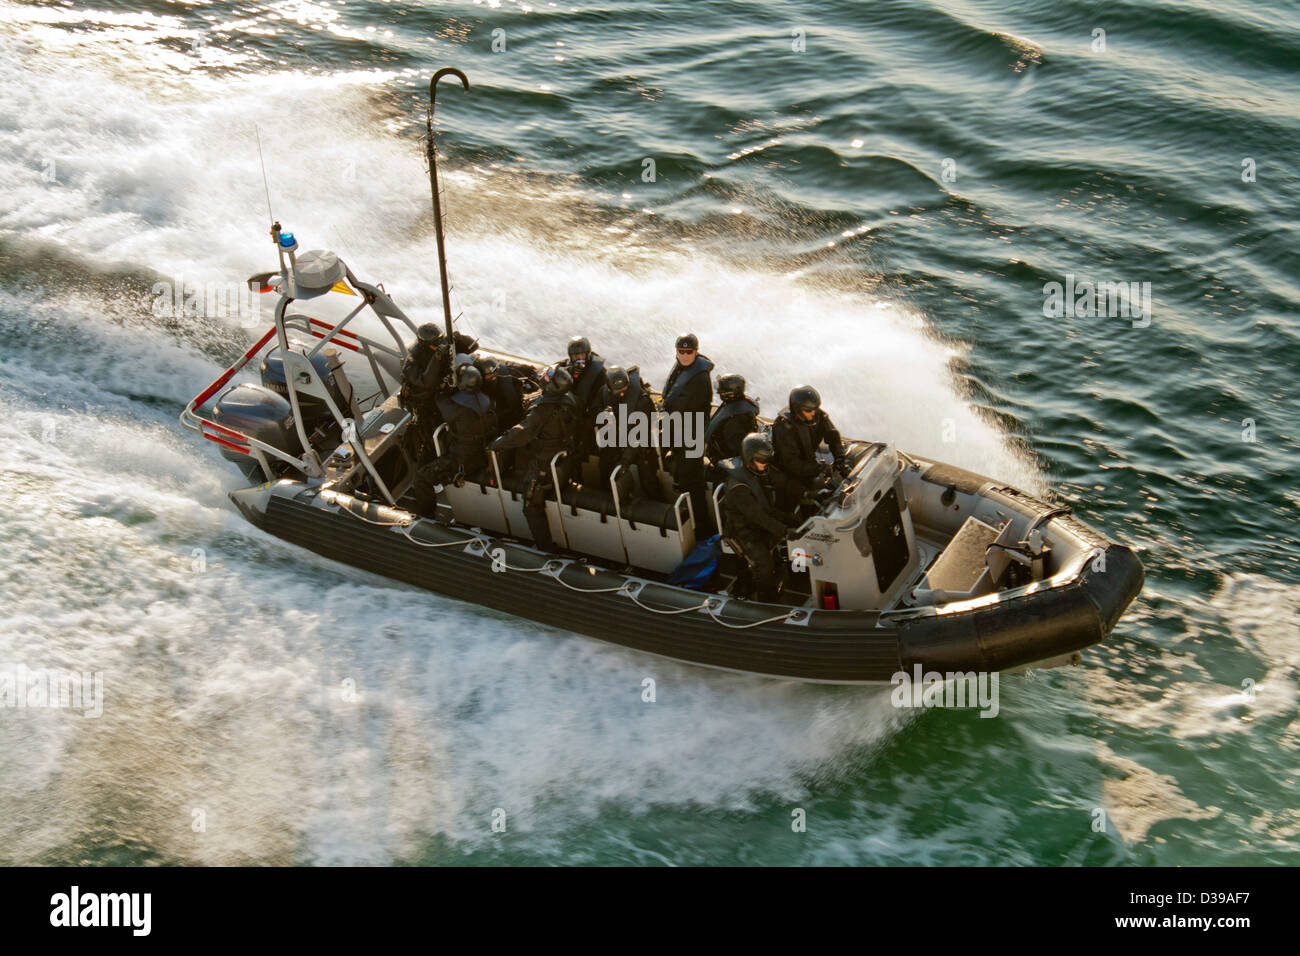 Une des forces spéciales SWAT -police- coque rigide gonflable (type zodiac) voile à la vitesse sur l'eau libre Banque D'Images